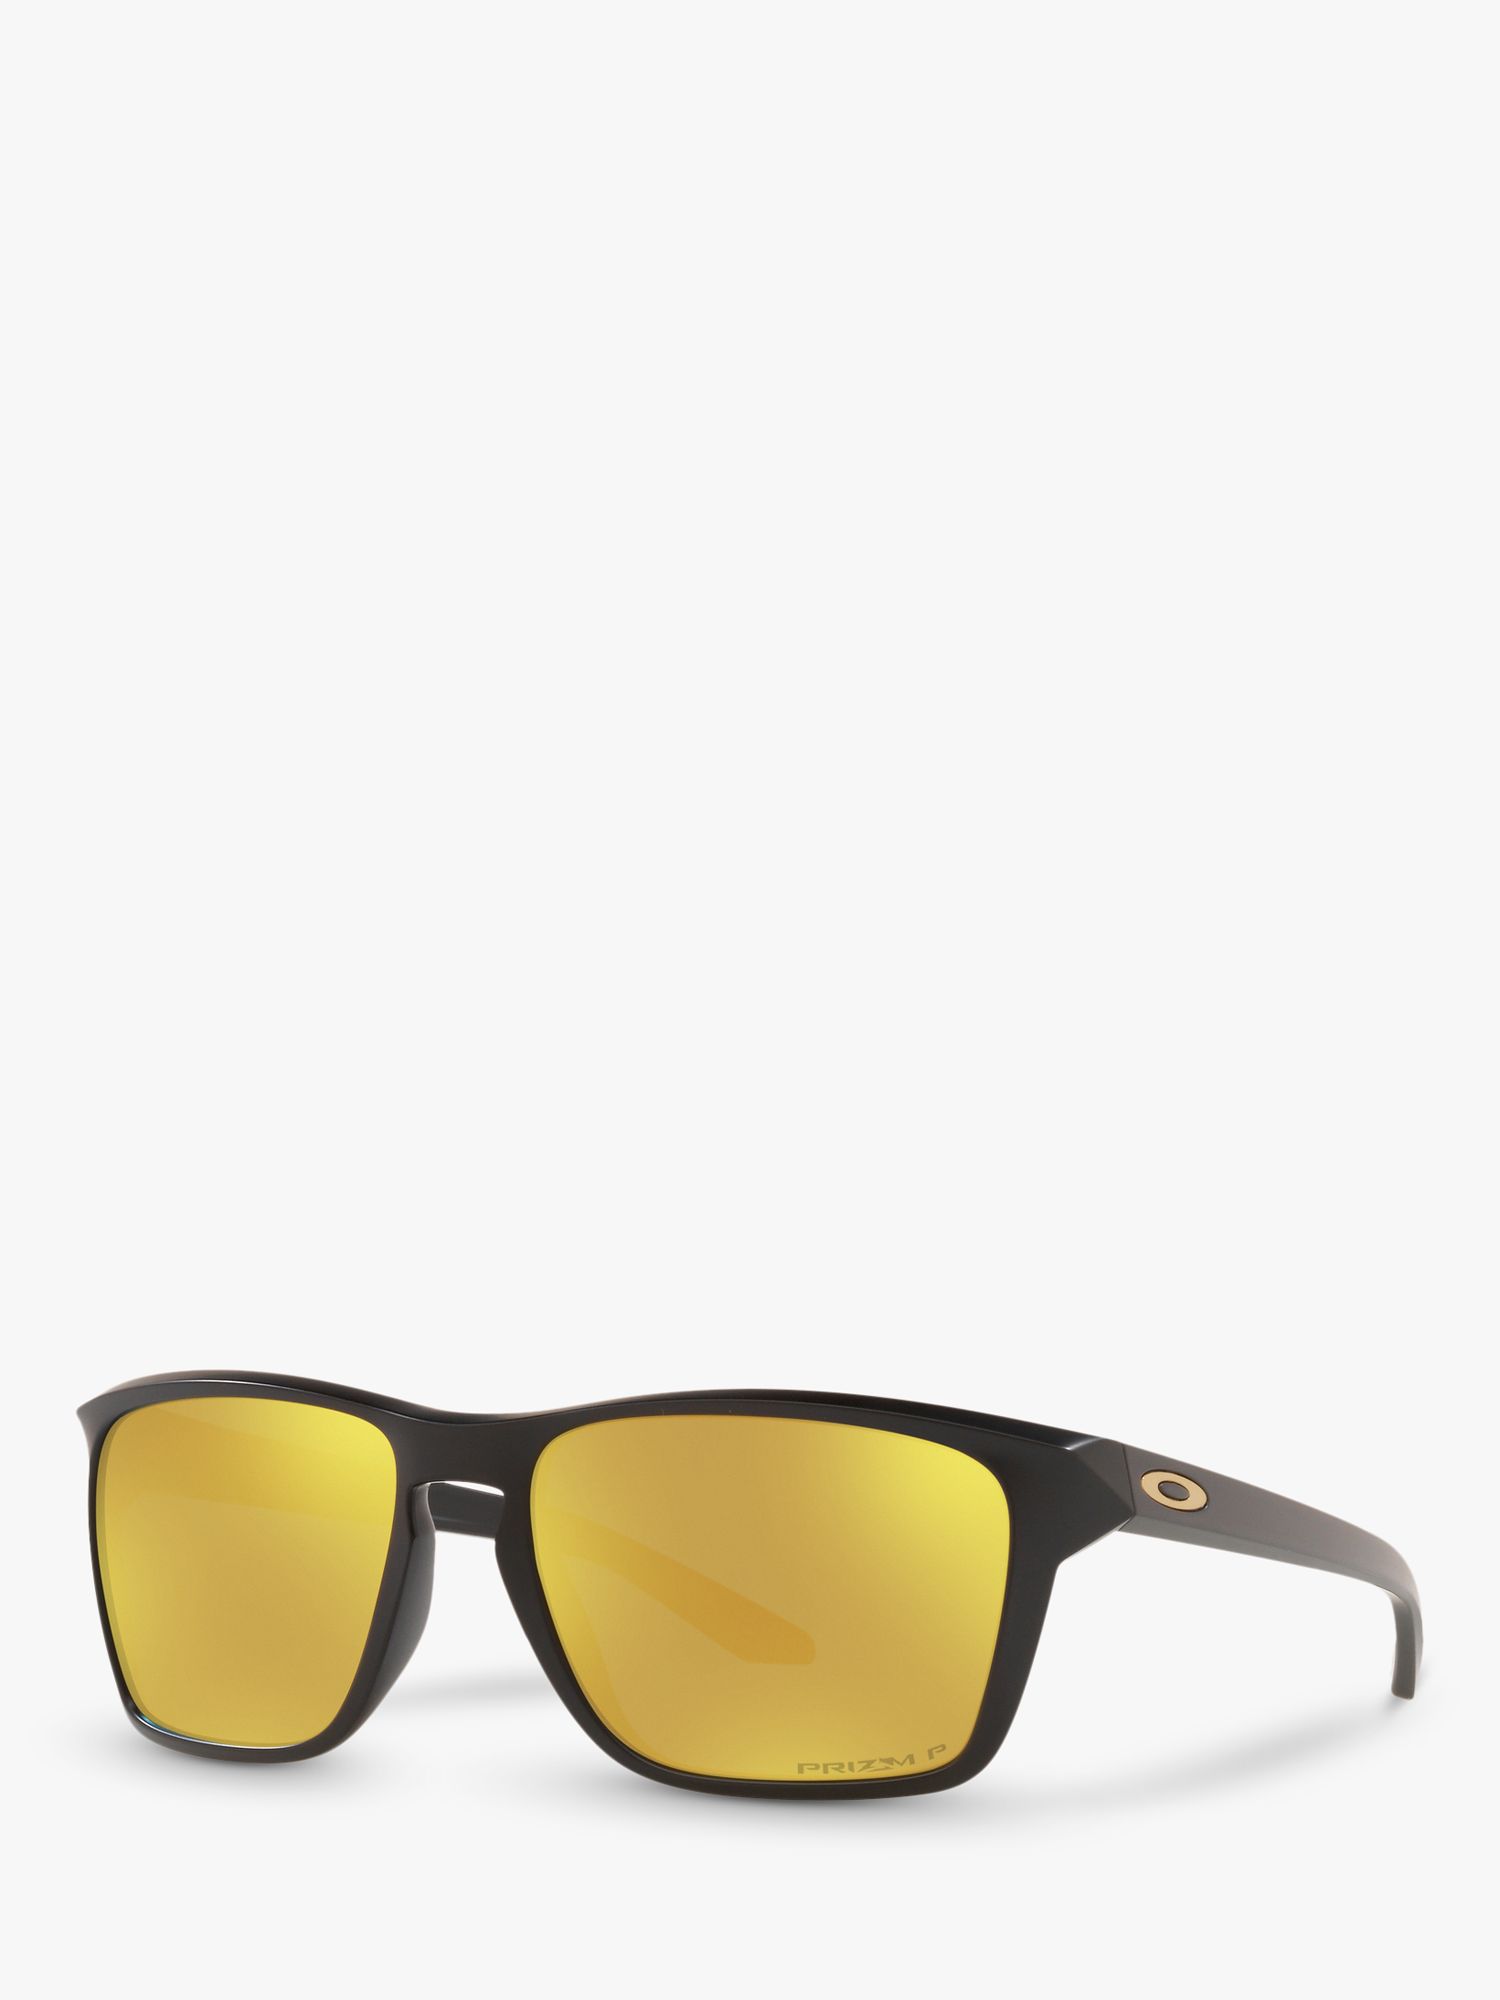 поляризационные солнцезащитные очки oo9448 57 sylas oakley Мужские поляризационные прямоугольные солнцезащитные очки Oakley OO9448 Sylas Prizm, черные/желтые